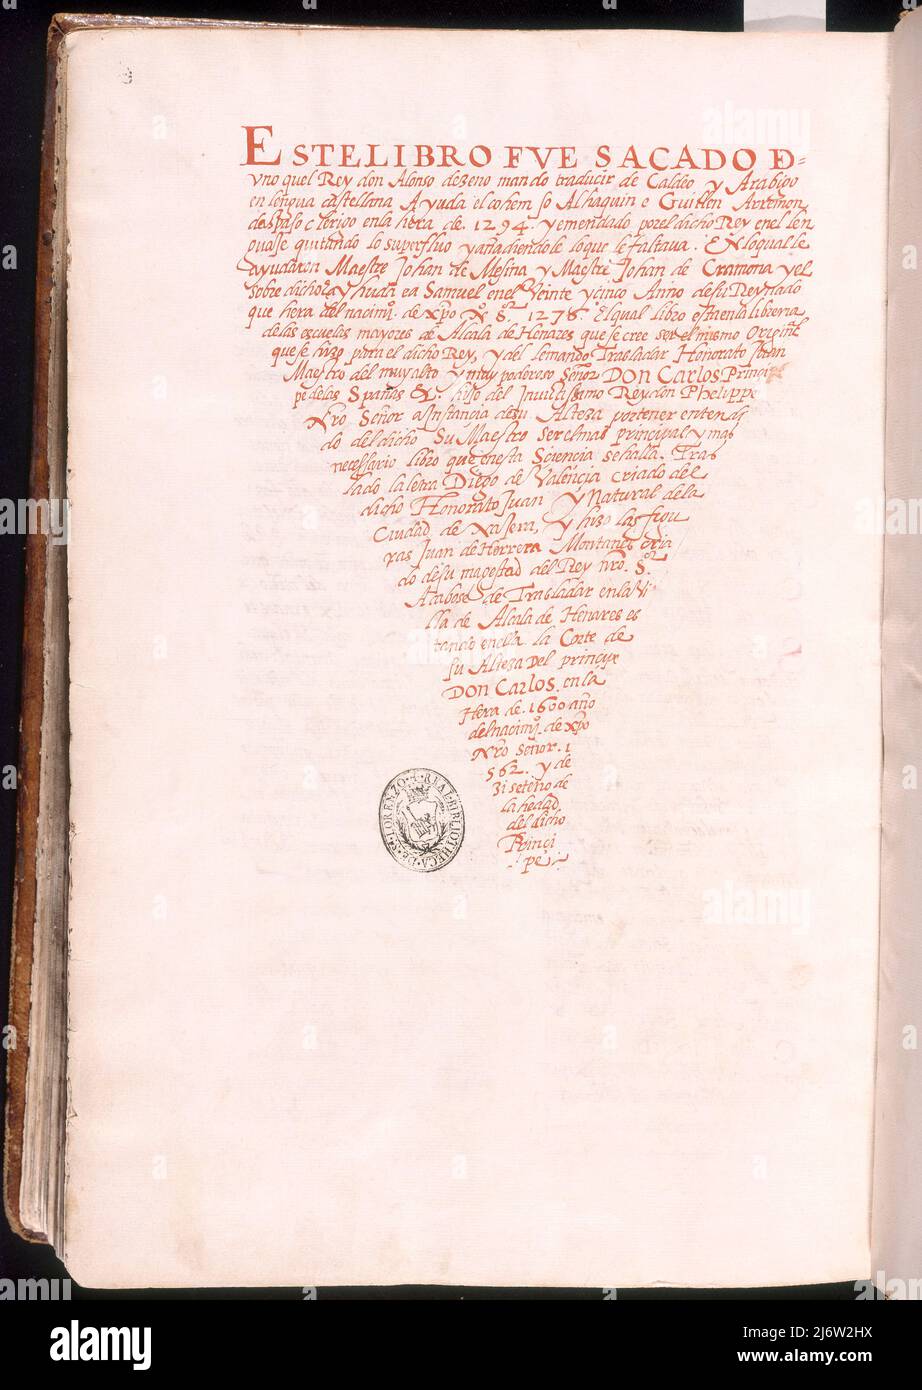 ULTIMA HOJA DE LA COPIA DEL LIBRO DEL SABRE DE ASTRONOMIA - EJEMPLAR DE JUAN HONORATO DE 1562. ORT: MONASTERIO-BIBLIOTECA-COLECCION. SAN LORENZO DEL ESCORIAL. MADRID. SPANIEN. Stockfoto